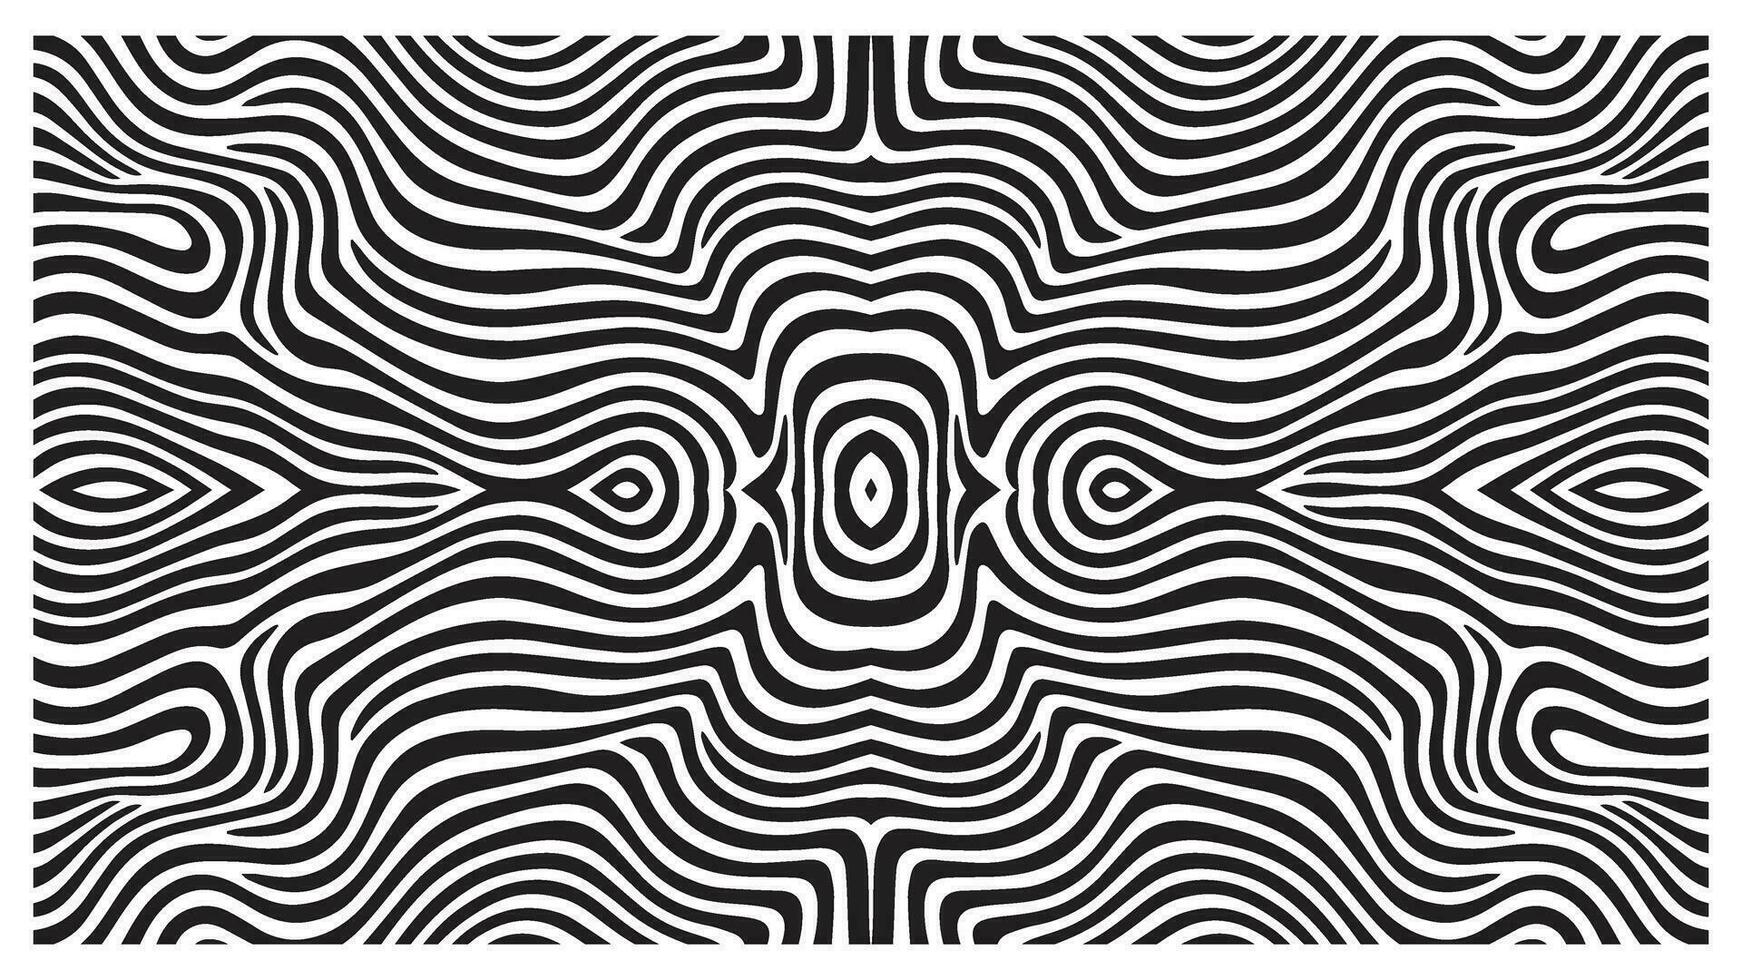 zebra patroon abstract meetkundig vervormd Golf achtergrond. zwart en wit 3d kolken voorwerpen vormen. minimalisme nog steeds leven stijl vector